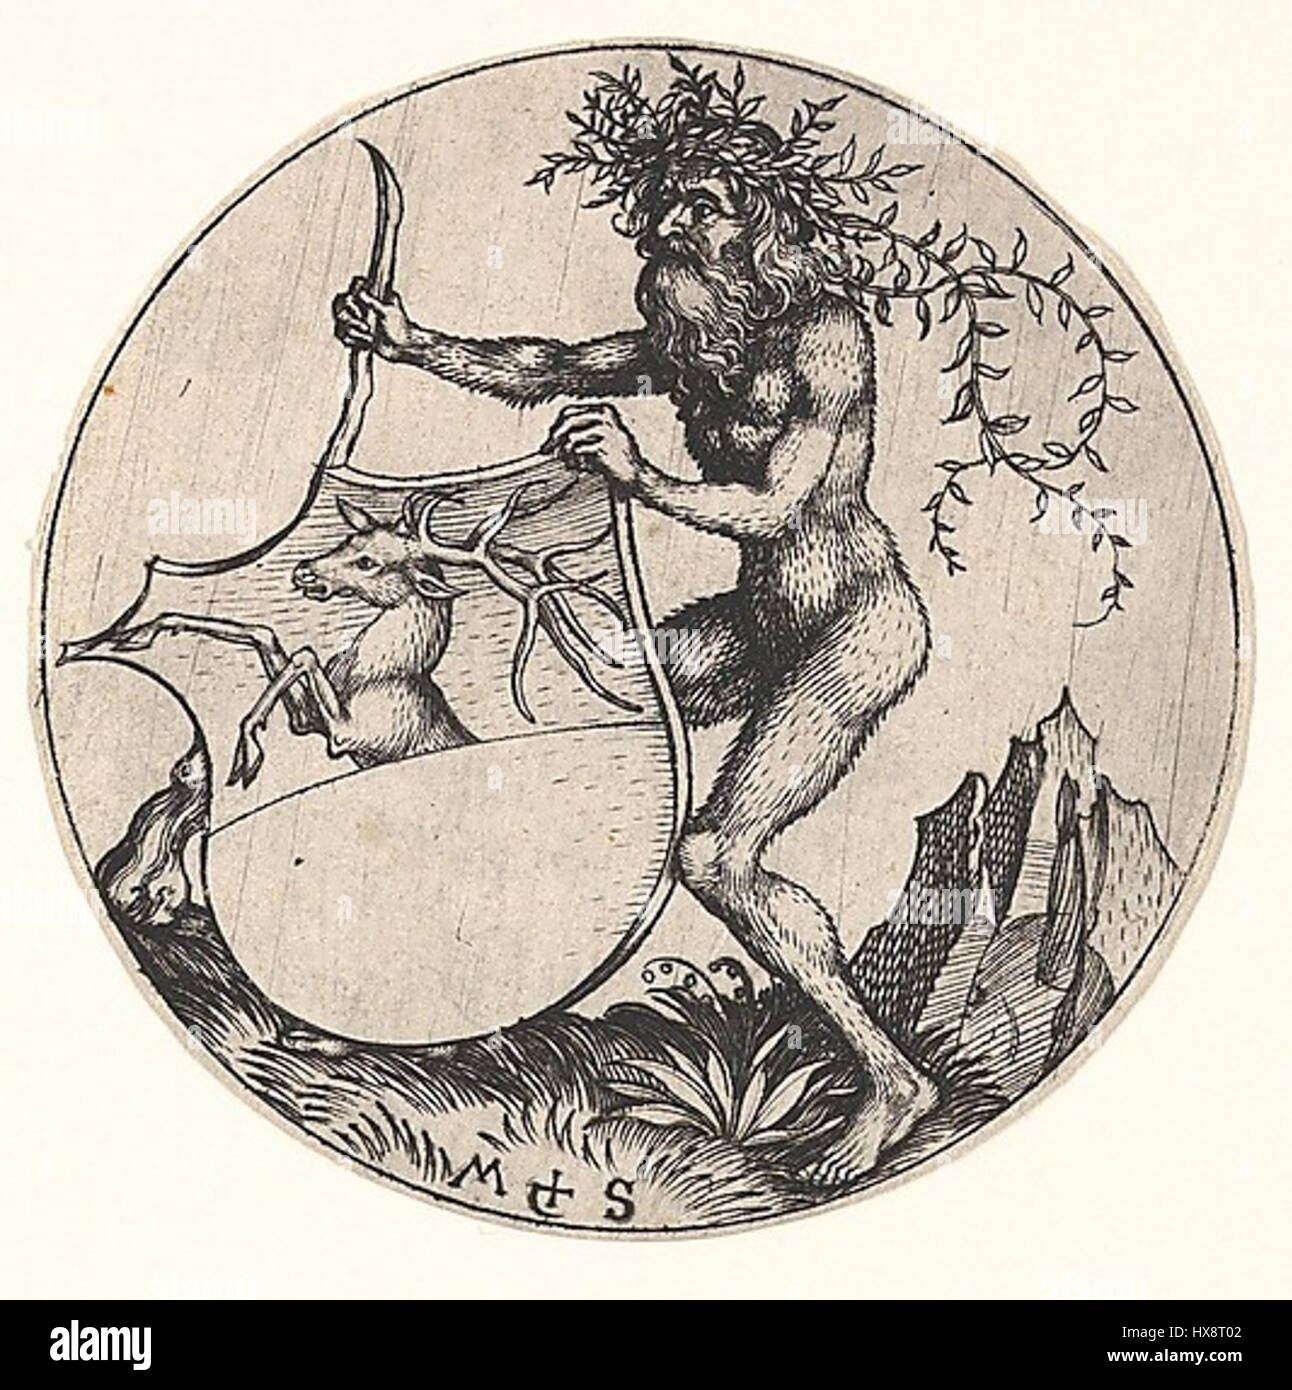 Martin Schongauer   Wappenschild mit Hirsch, von einem wilden Mann gehalten (L 103) Stock Photo